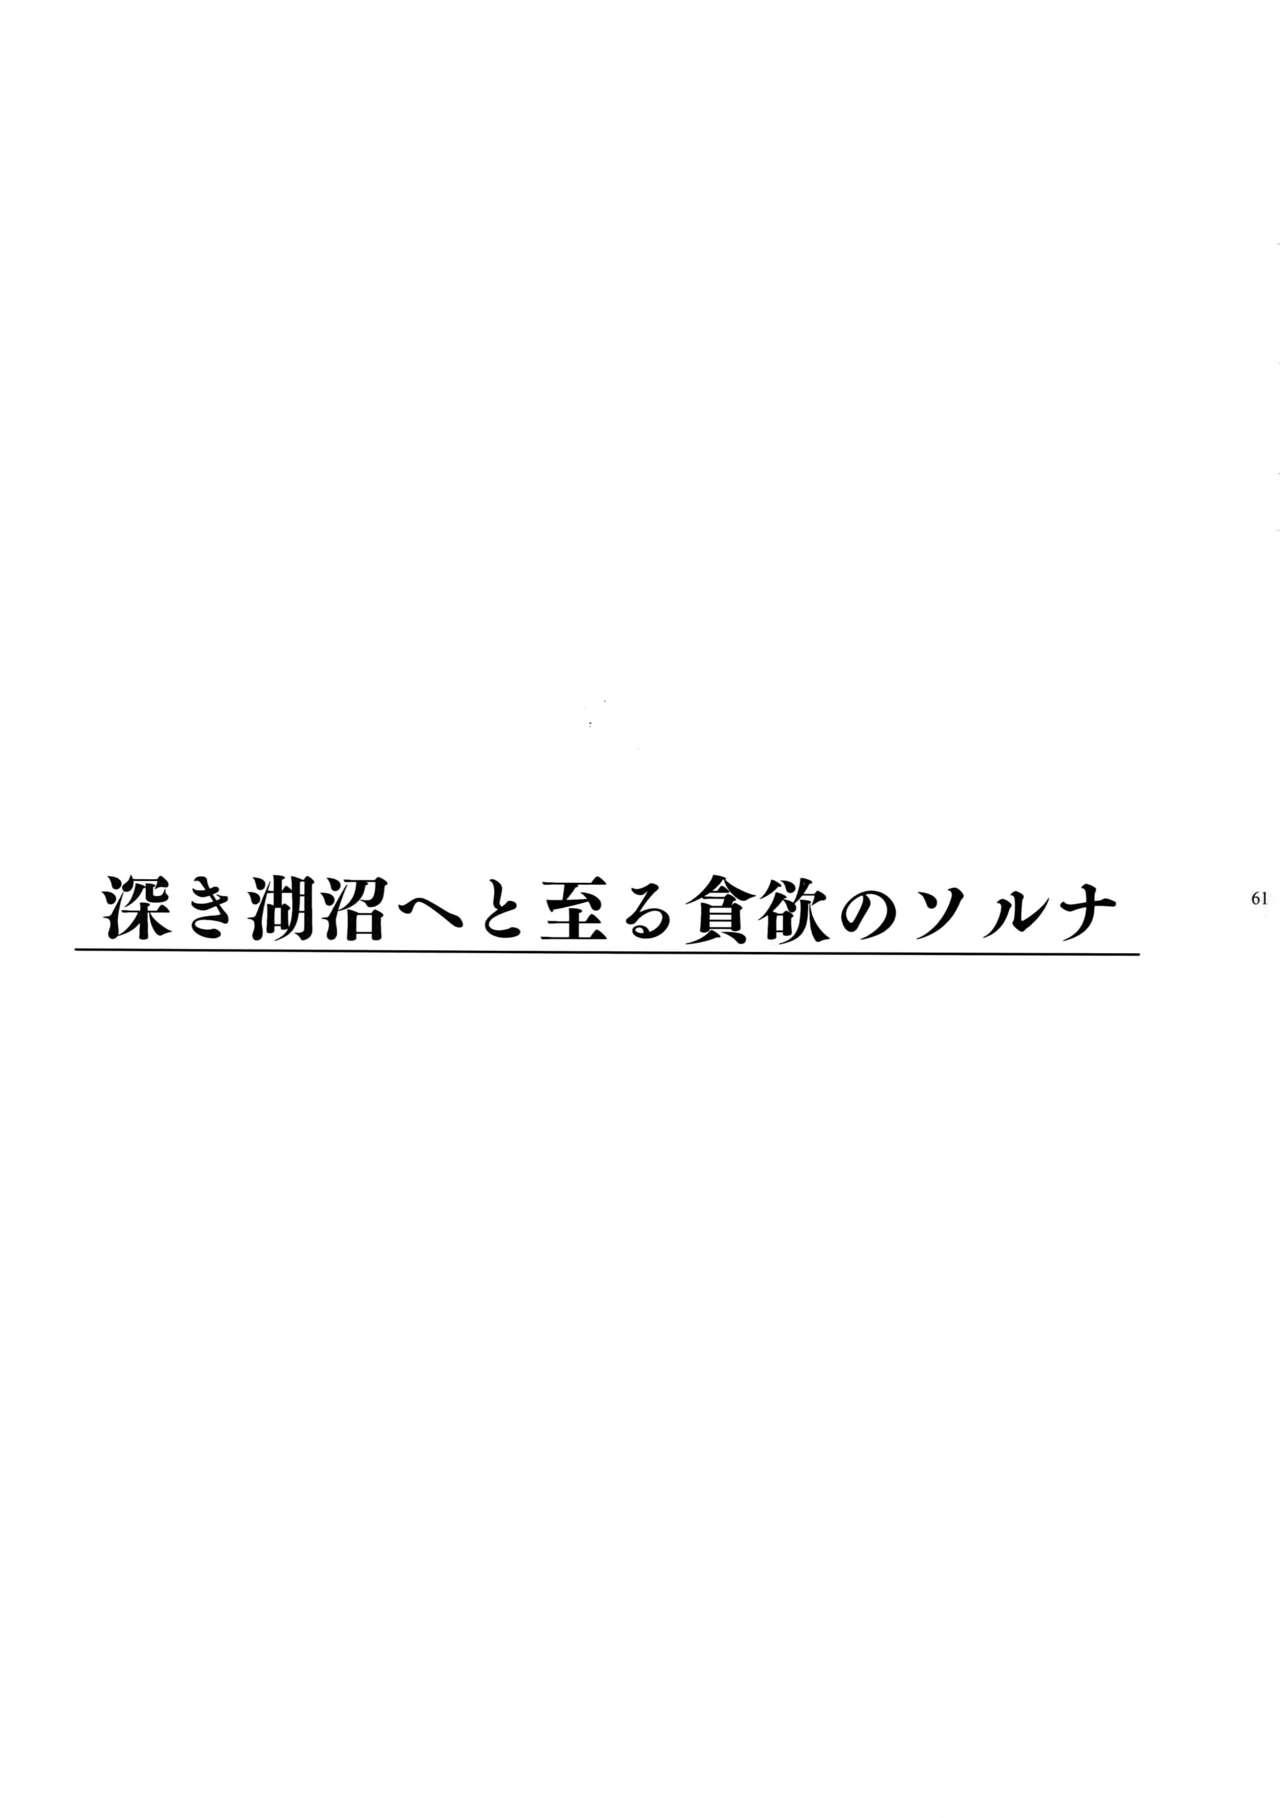 Giruoji Sairoku-shuu 「gayo Re」 61